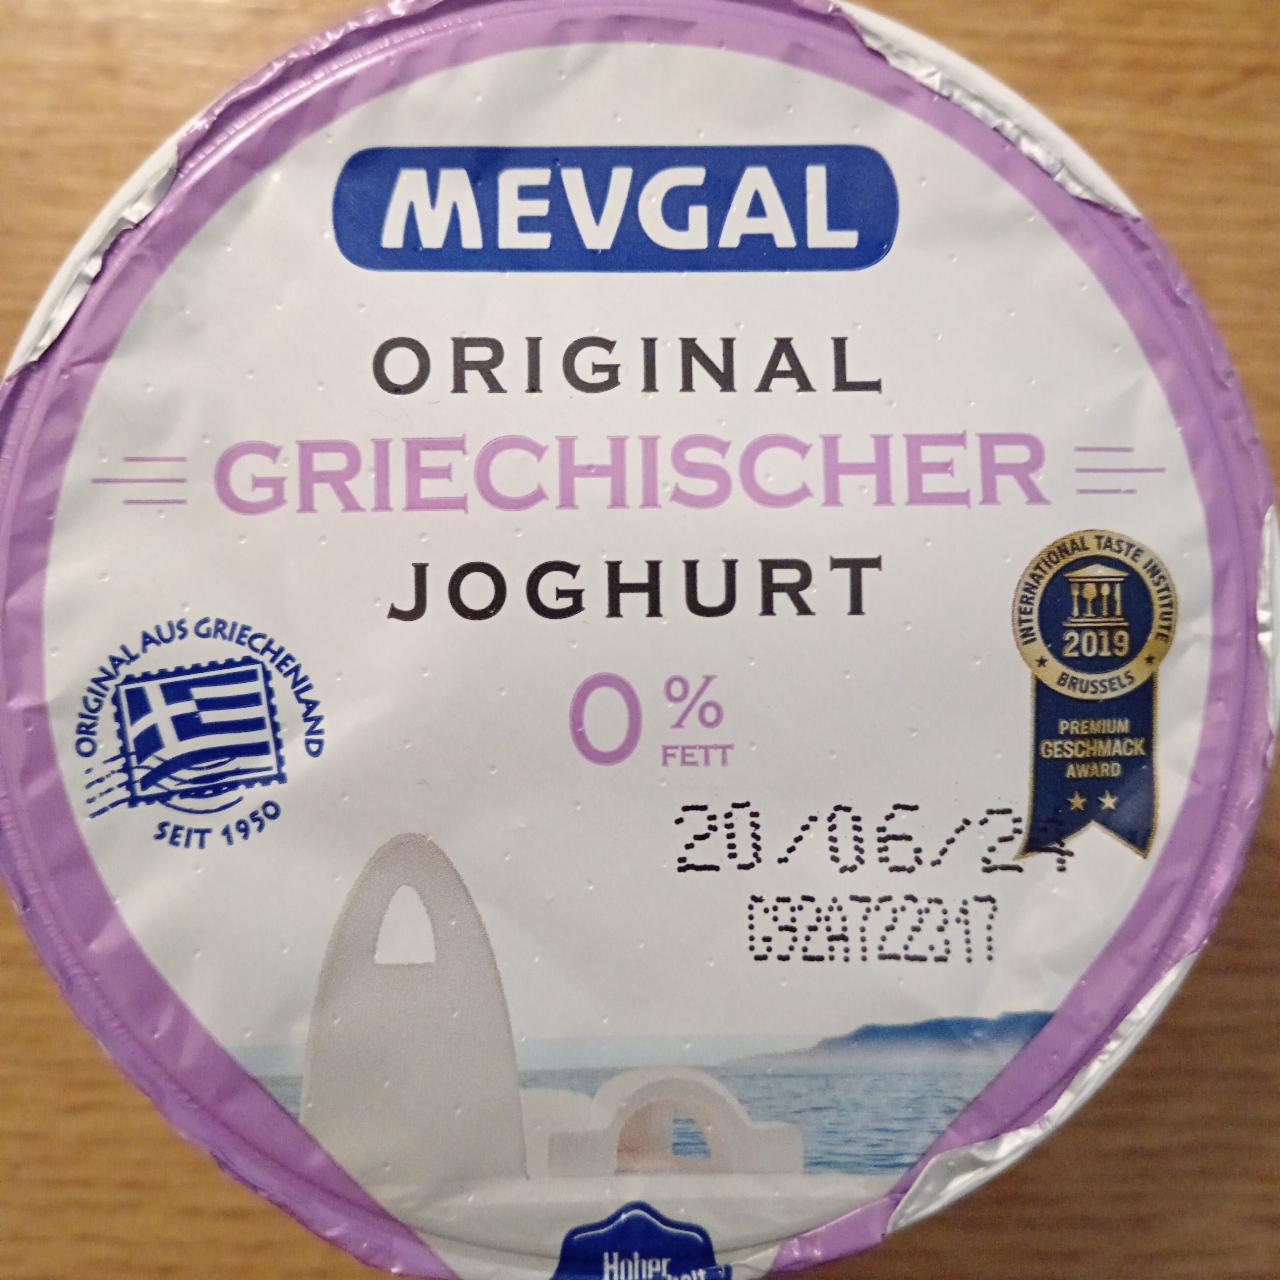 Fotografie - Original Griechischer Joghurt 0% Fett Mevgal